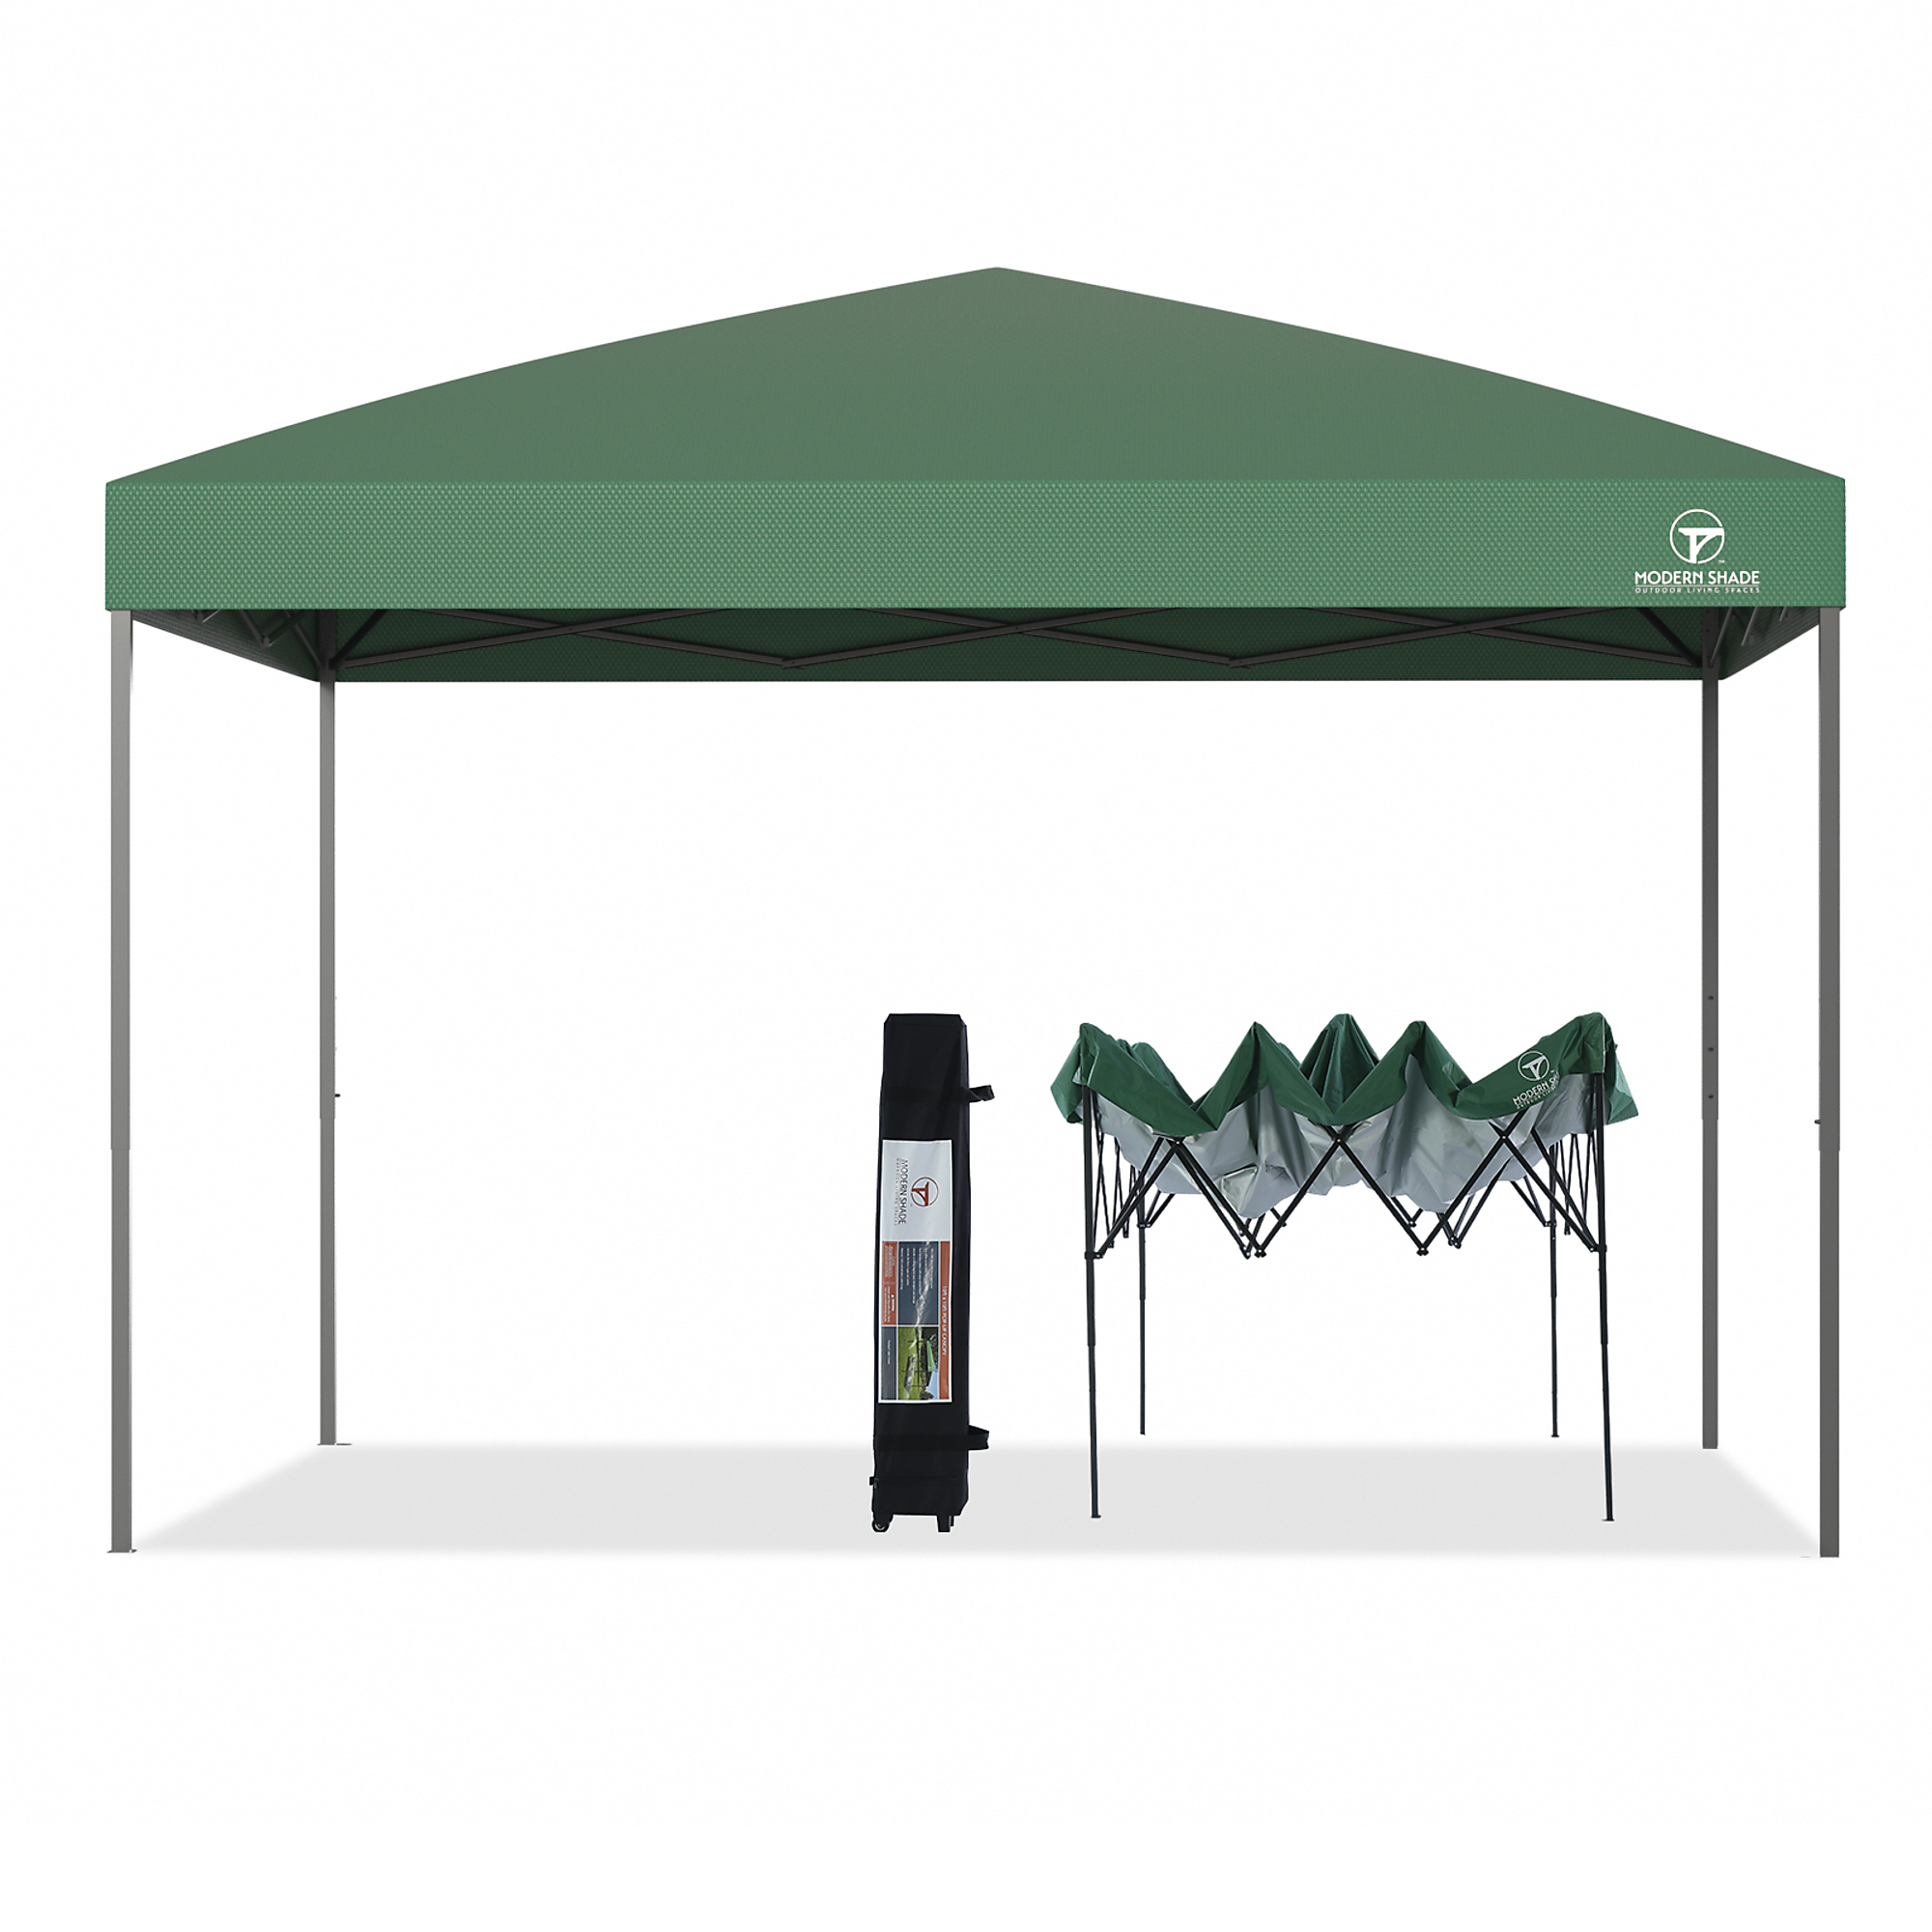 Modern Shade, Modern Shade 10âx10â Pop Up Gazebo Canopy(Green), Length 10 ft, Width 10 ft, Color Green, Model IG10600050